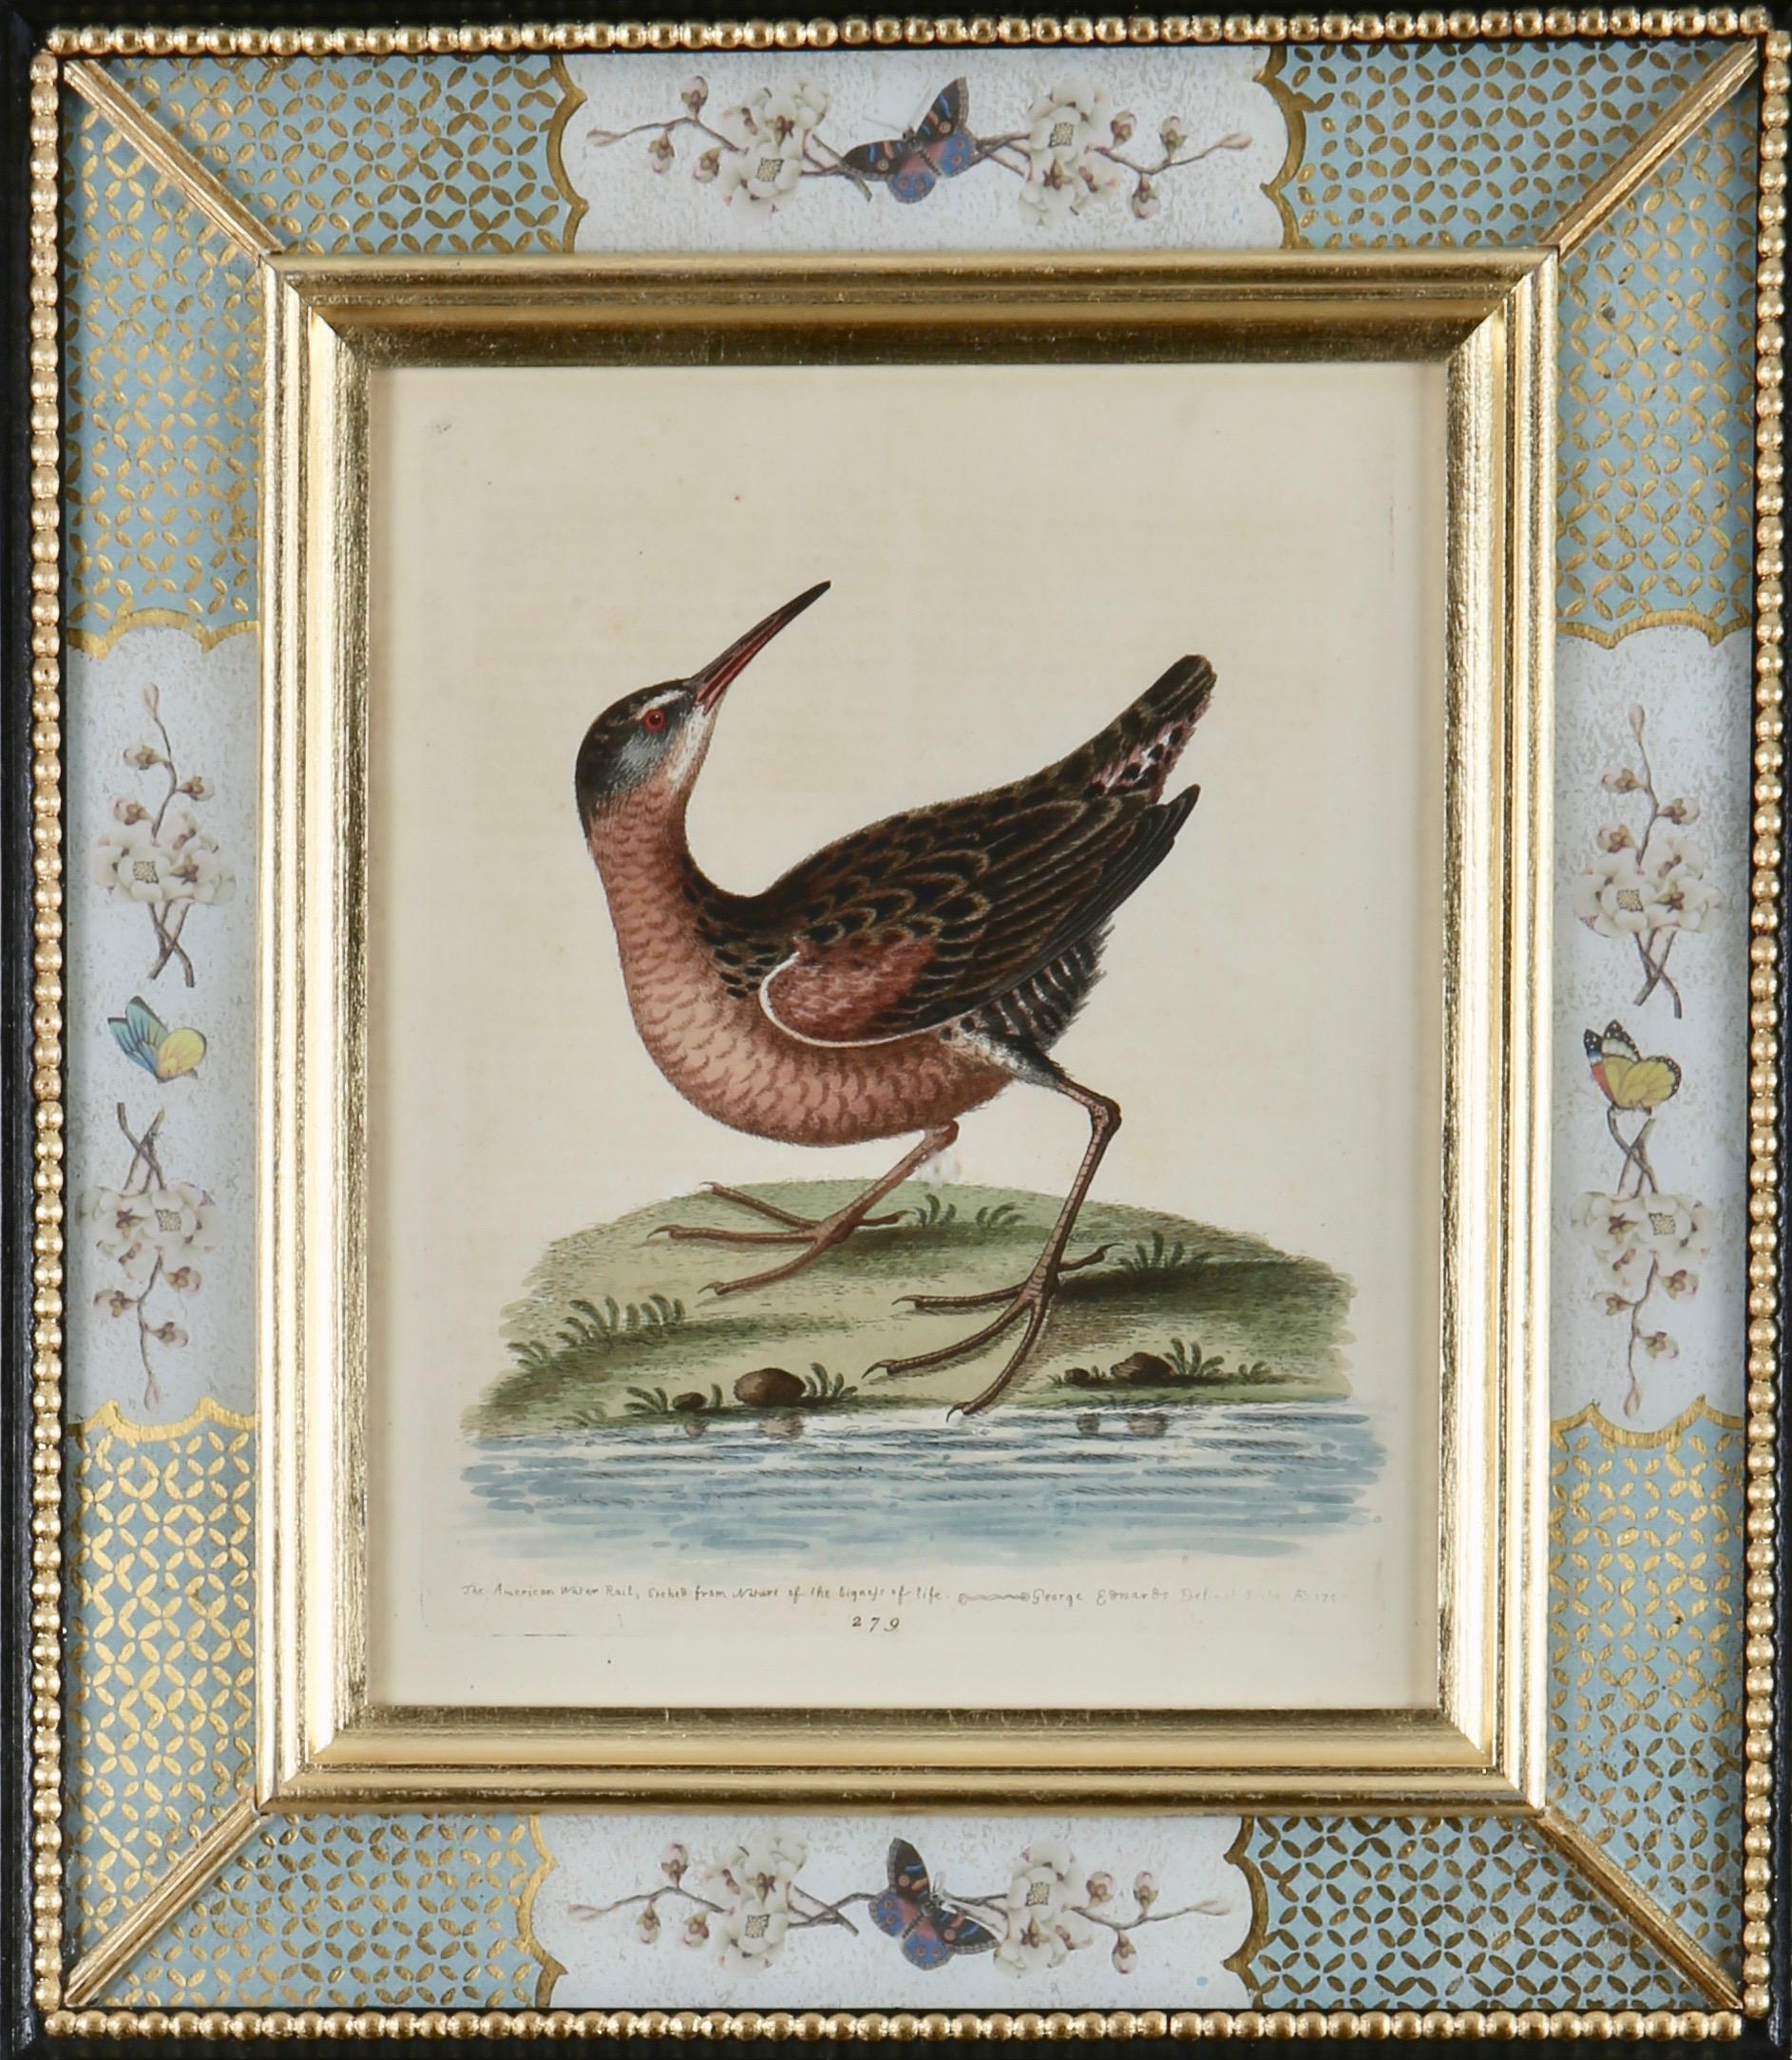 George Edwards : "A History of Uncommon Birds", 1749-1761.

Éminent naturaliste et ornithologue anglais, George Edwards (1694 -1773) est surtout connu pour son ouvrage "A Natural History of Uncommon Birds", qu'il a publié entre 1743 et 1761 alors